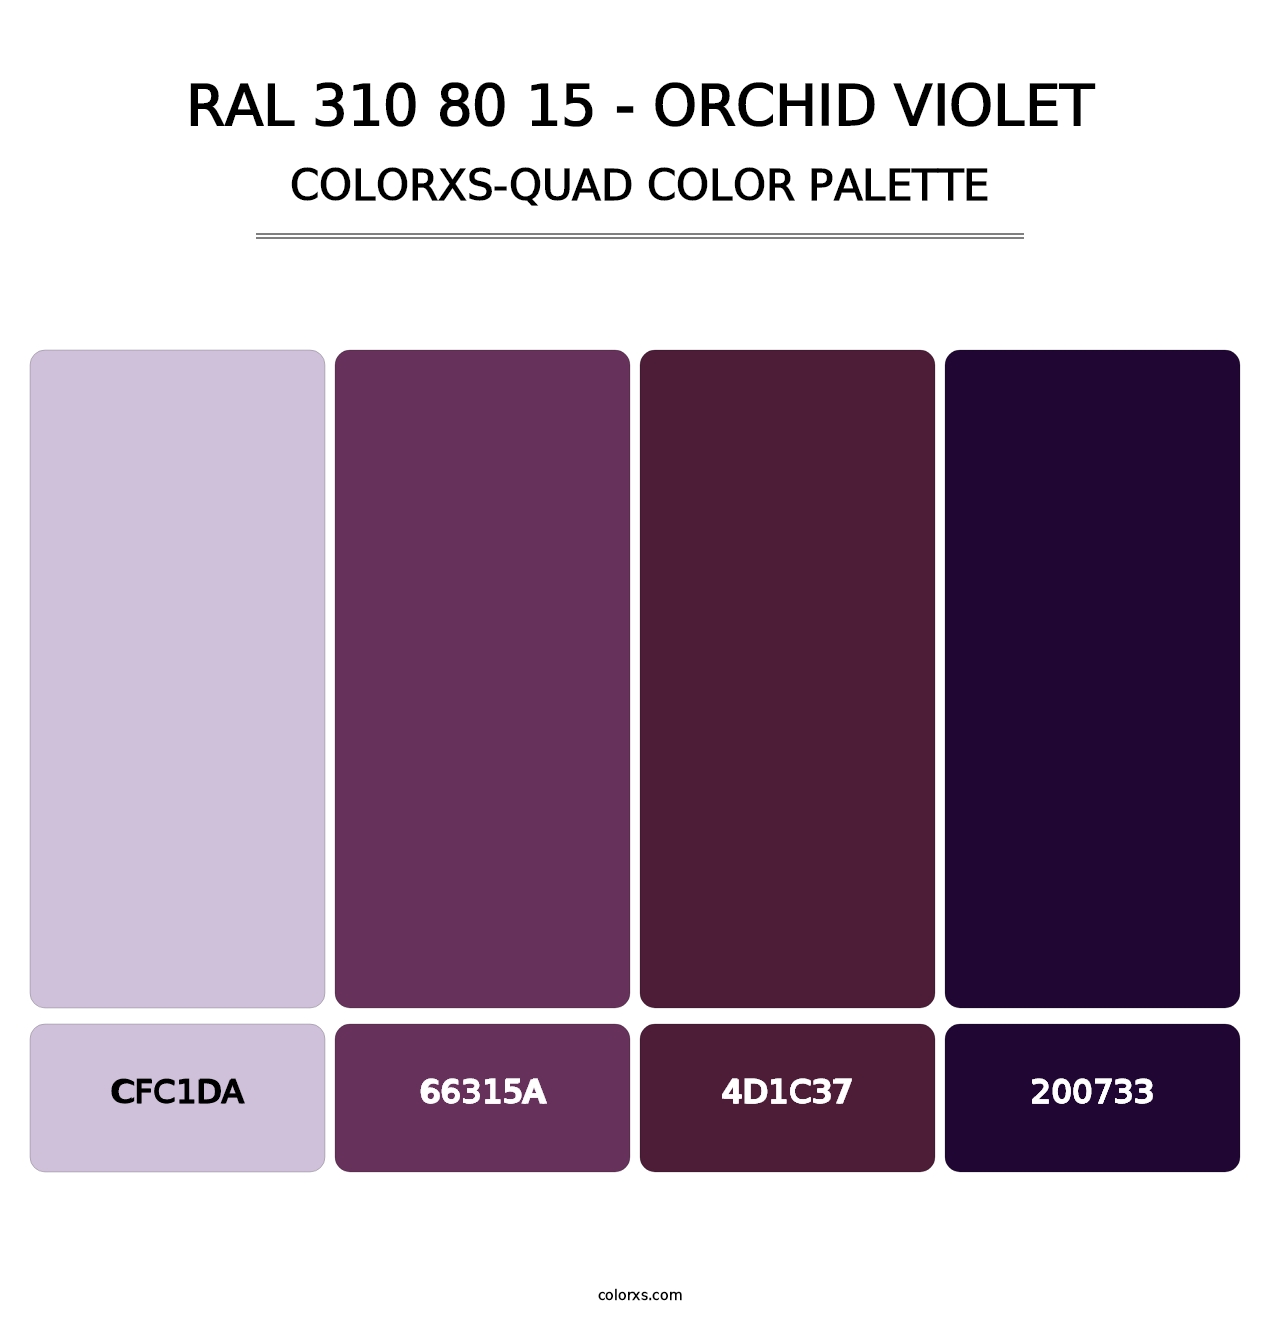 RAL 310 80 15 - Orchid Violet - Colorxs Quad Palette